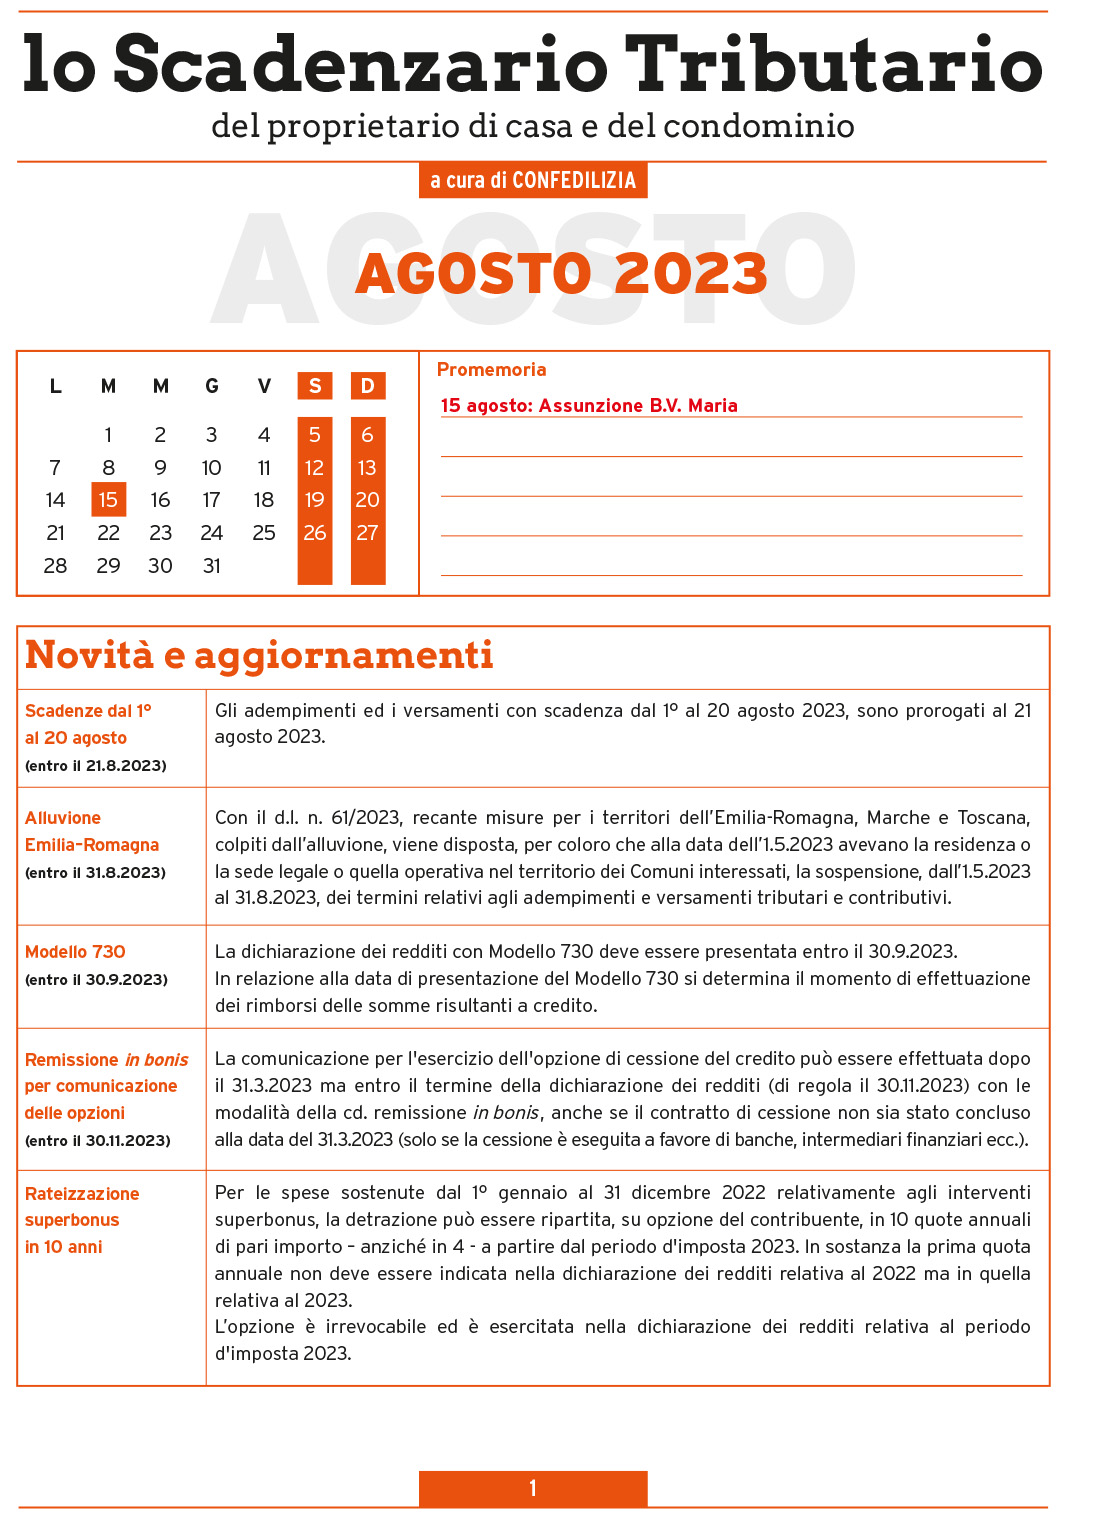 SCADENZARIO TRIBUTARIO AGOSTO 2023 (8 pagg.)-1